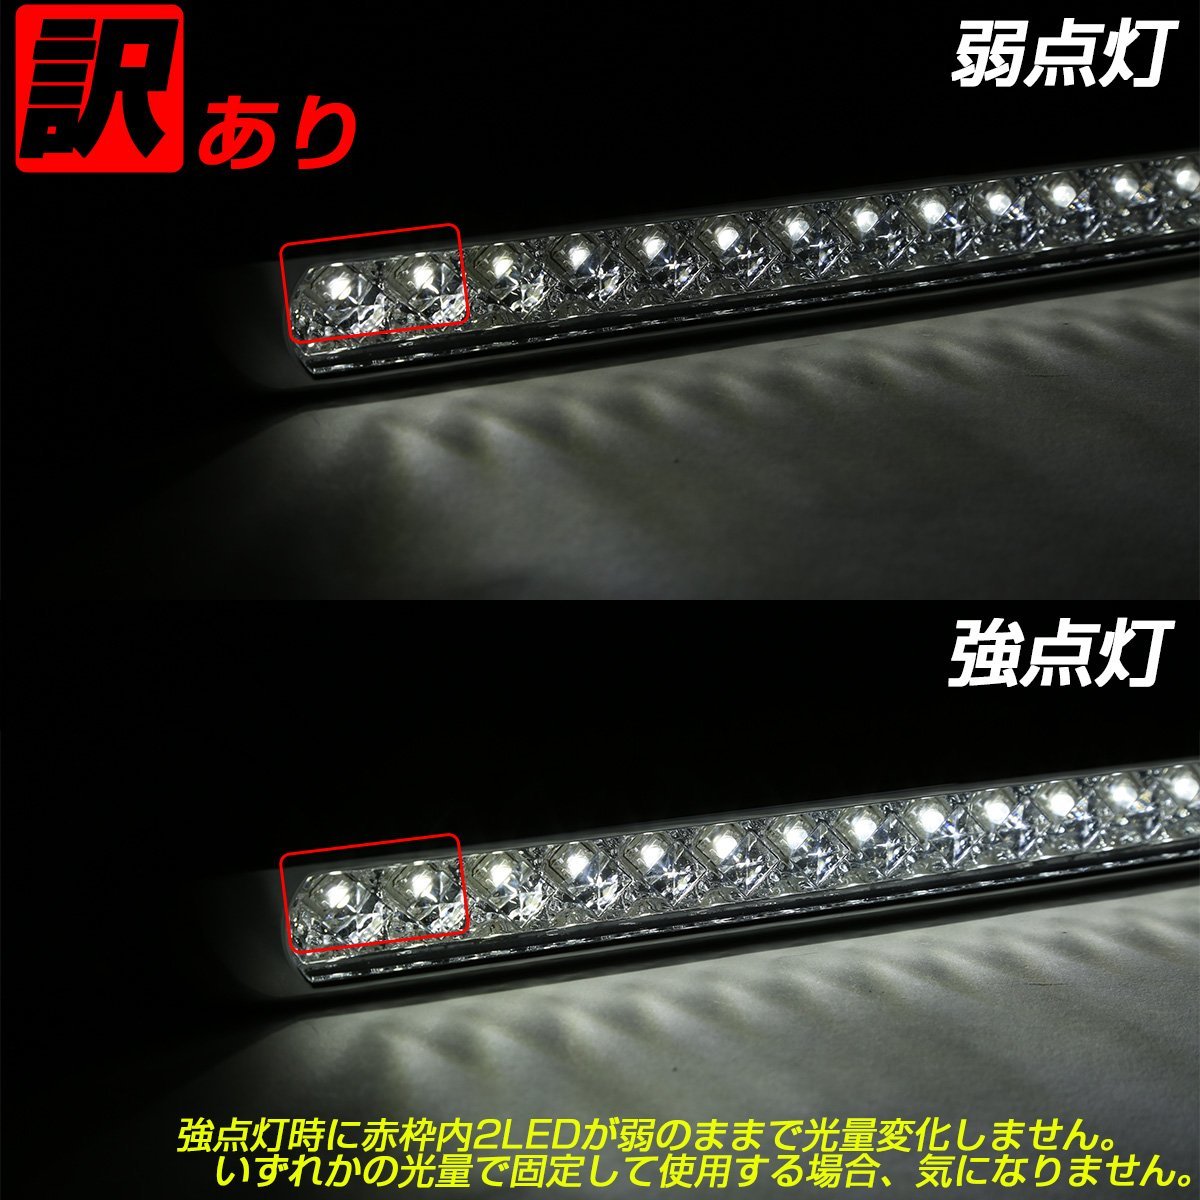 訳あり 17連 LED スーパーワイド マーカー ランプ 12V 24V兼用 ブルーレンズ ブルー発光 車高灯 サイドマーカーに ZZF-234_画像9